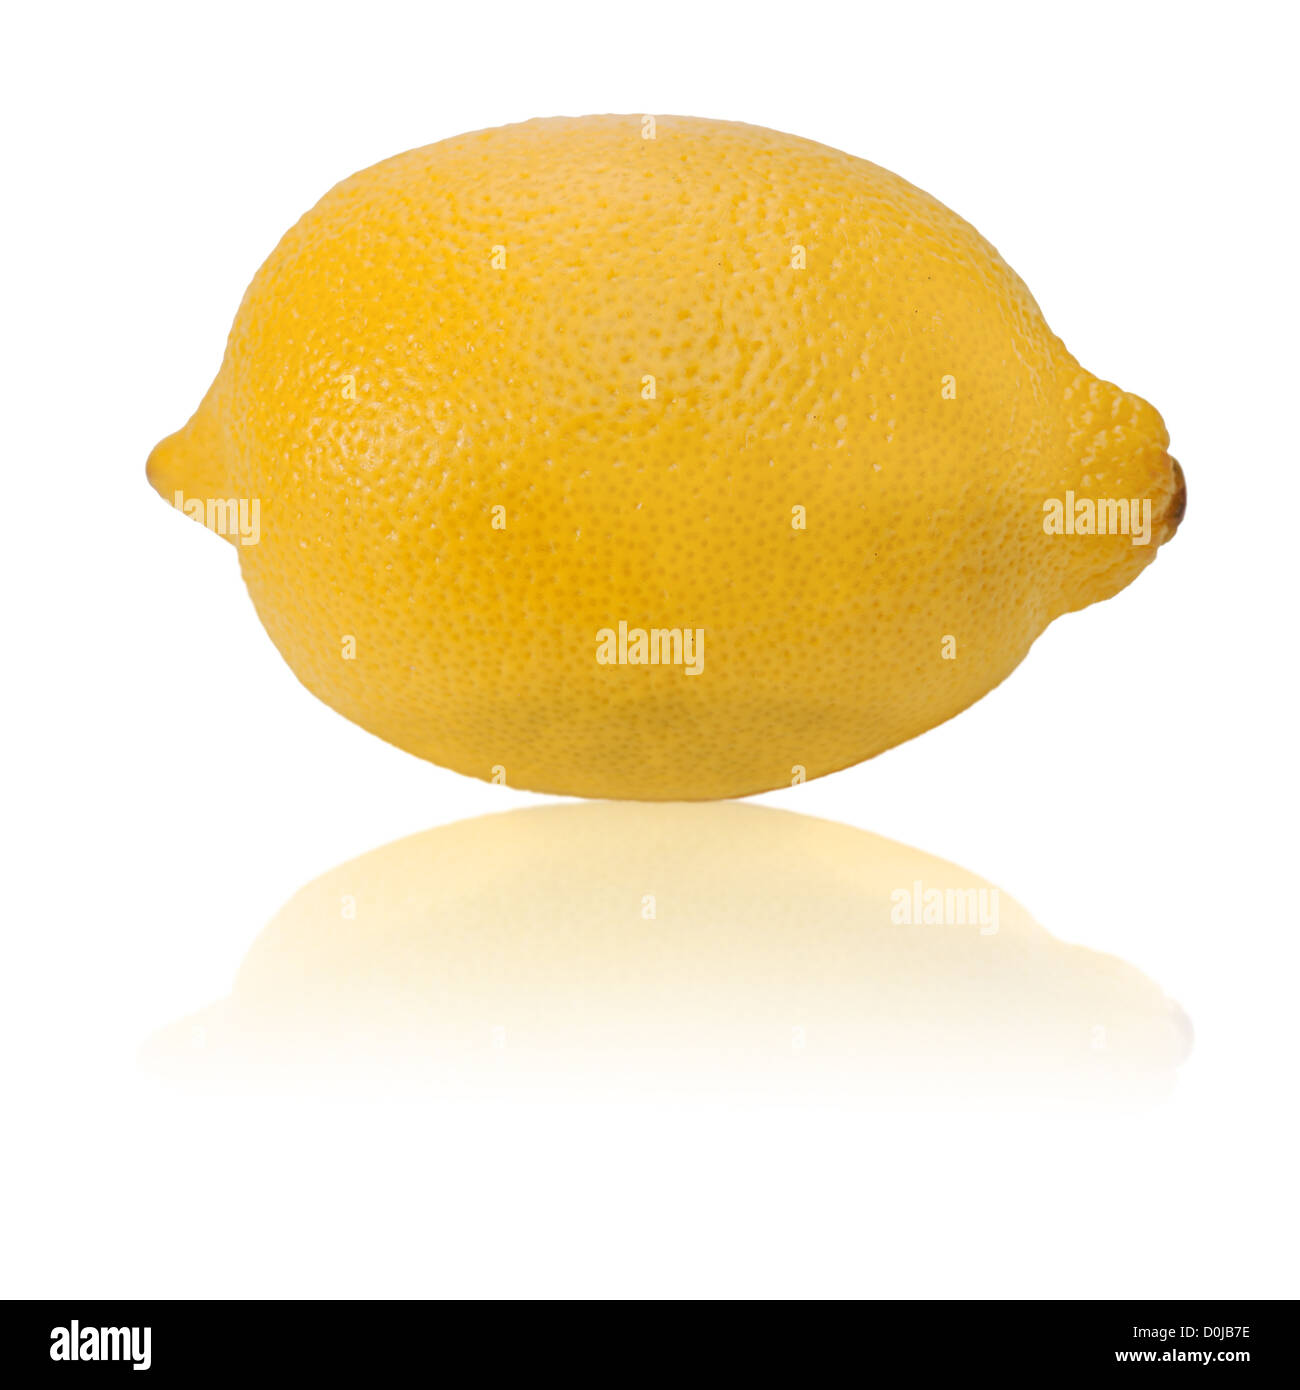 Giallo limone maturo isolato su uno sfondo bianco Foto Stock